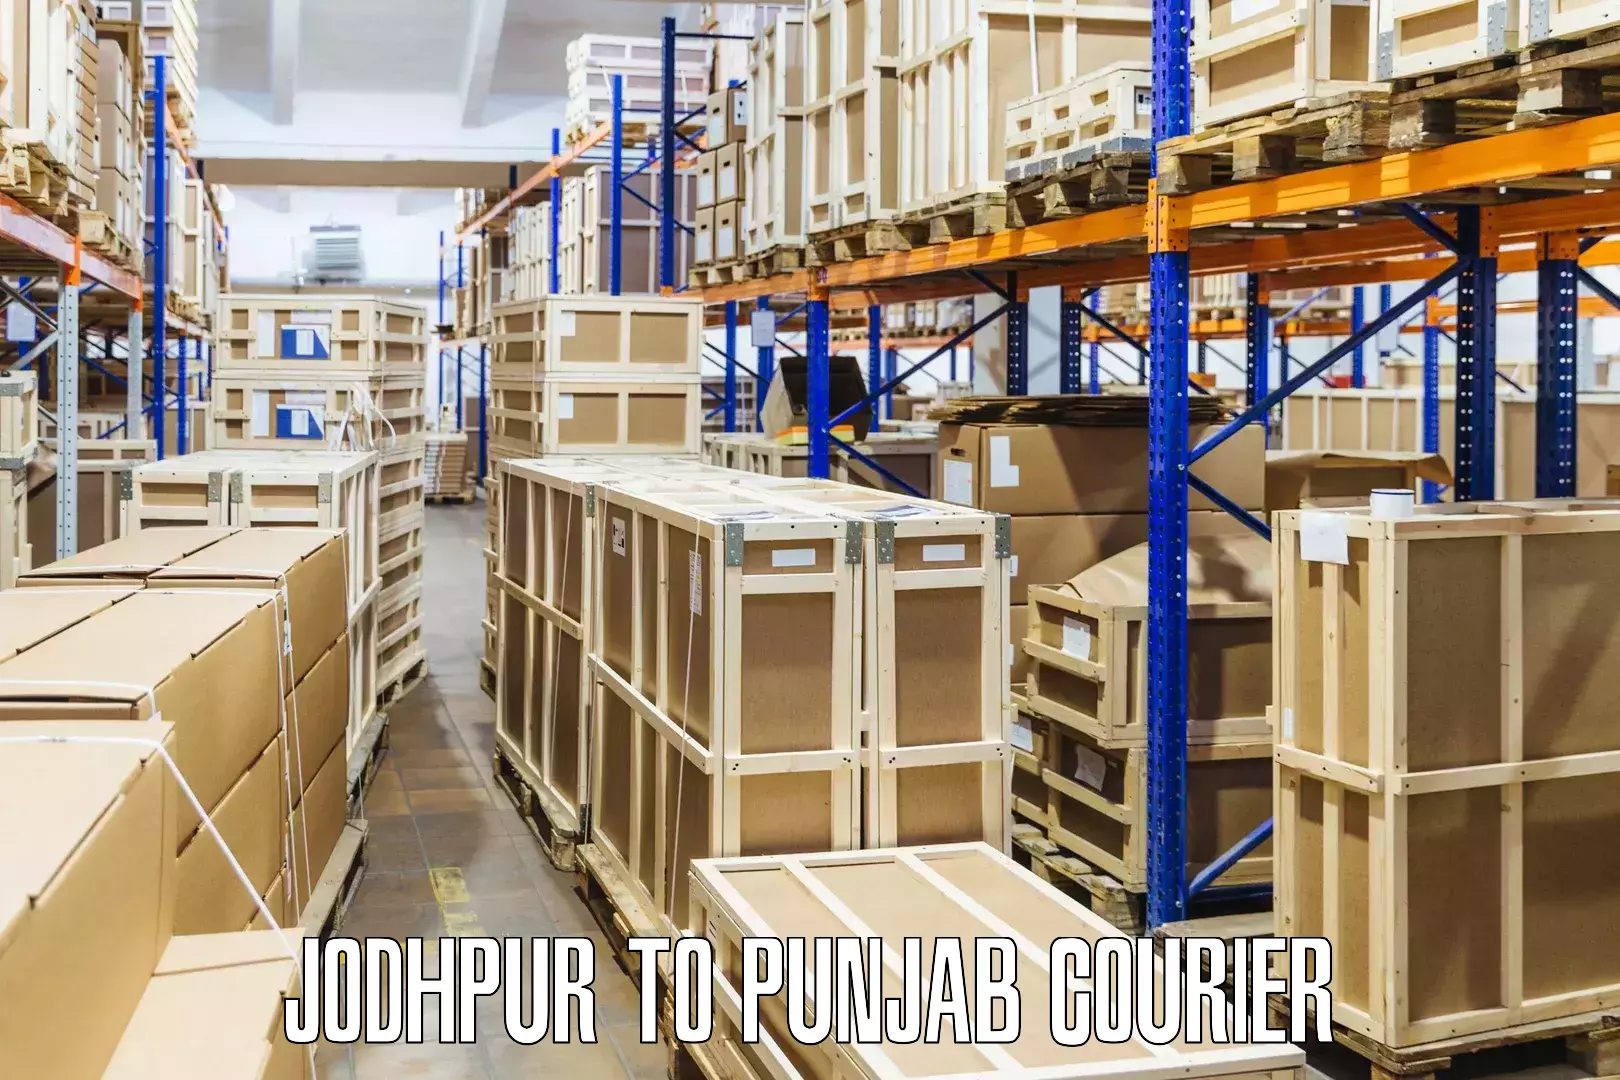 Discount courier rates Jodhpur to Rupnagar